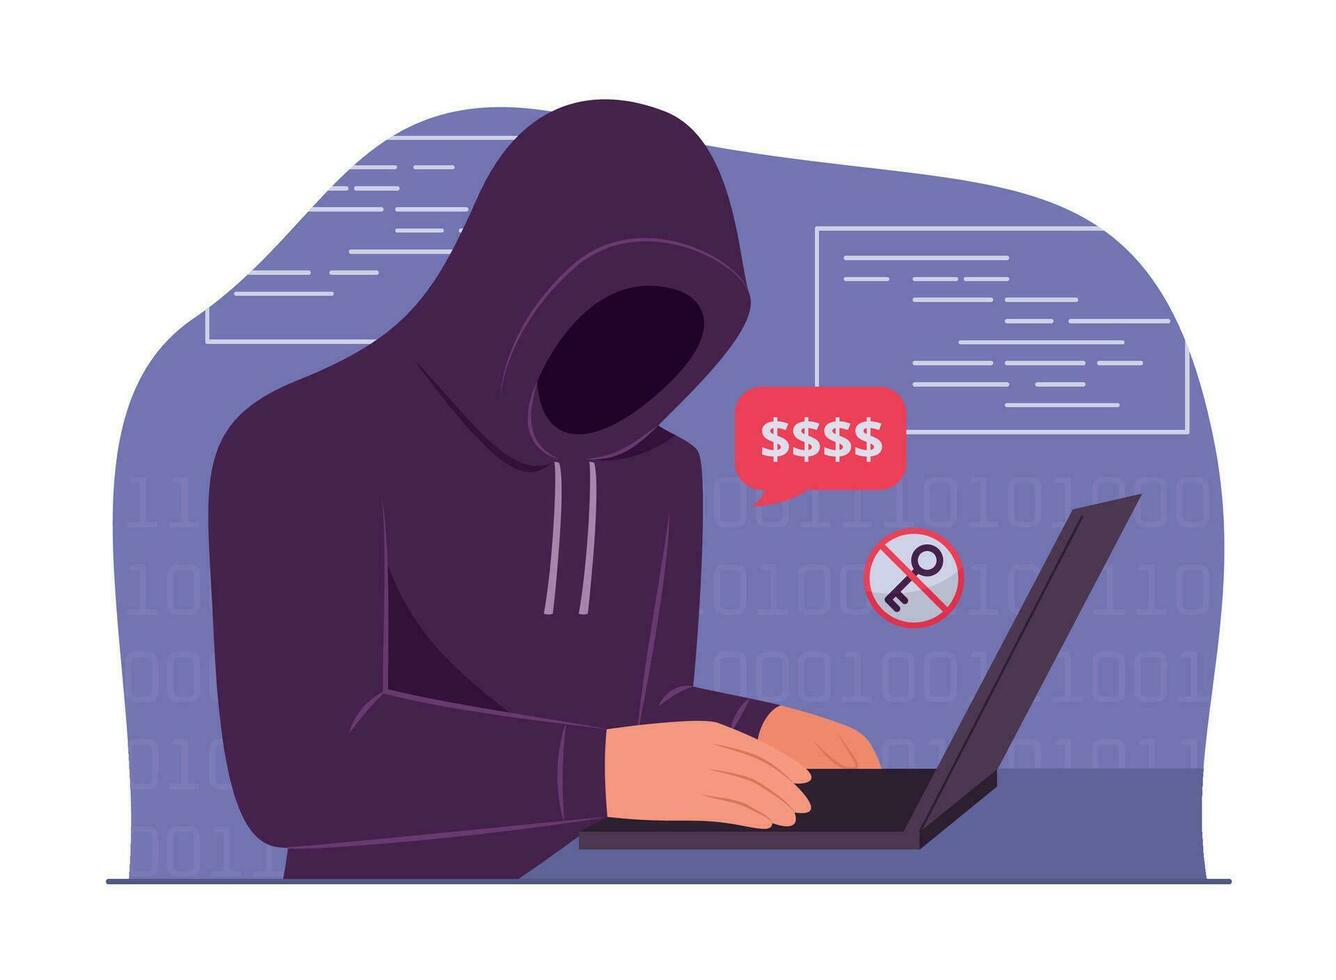 hacker Mens in kap hacken laptop computer voor cyber misdrijf concept illustratie vector